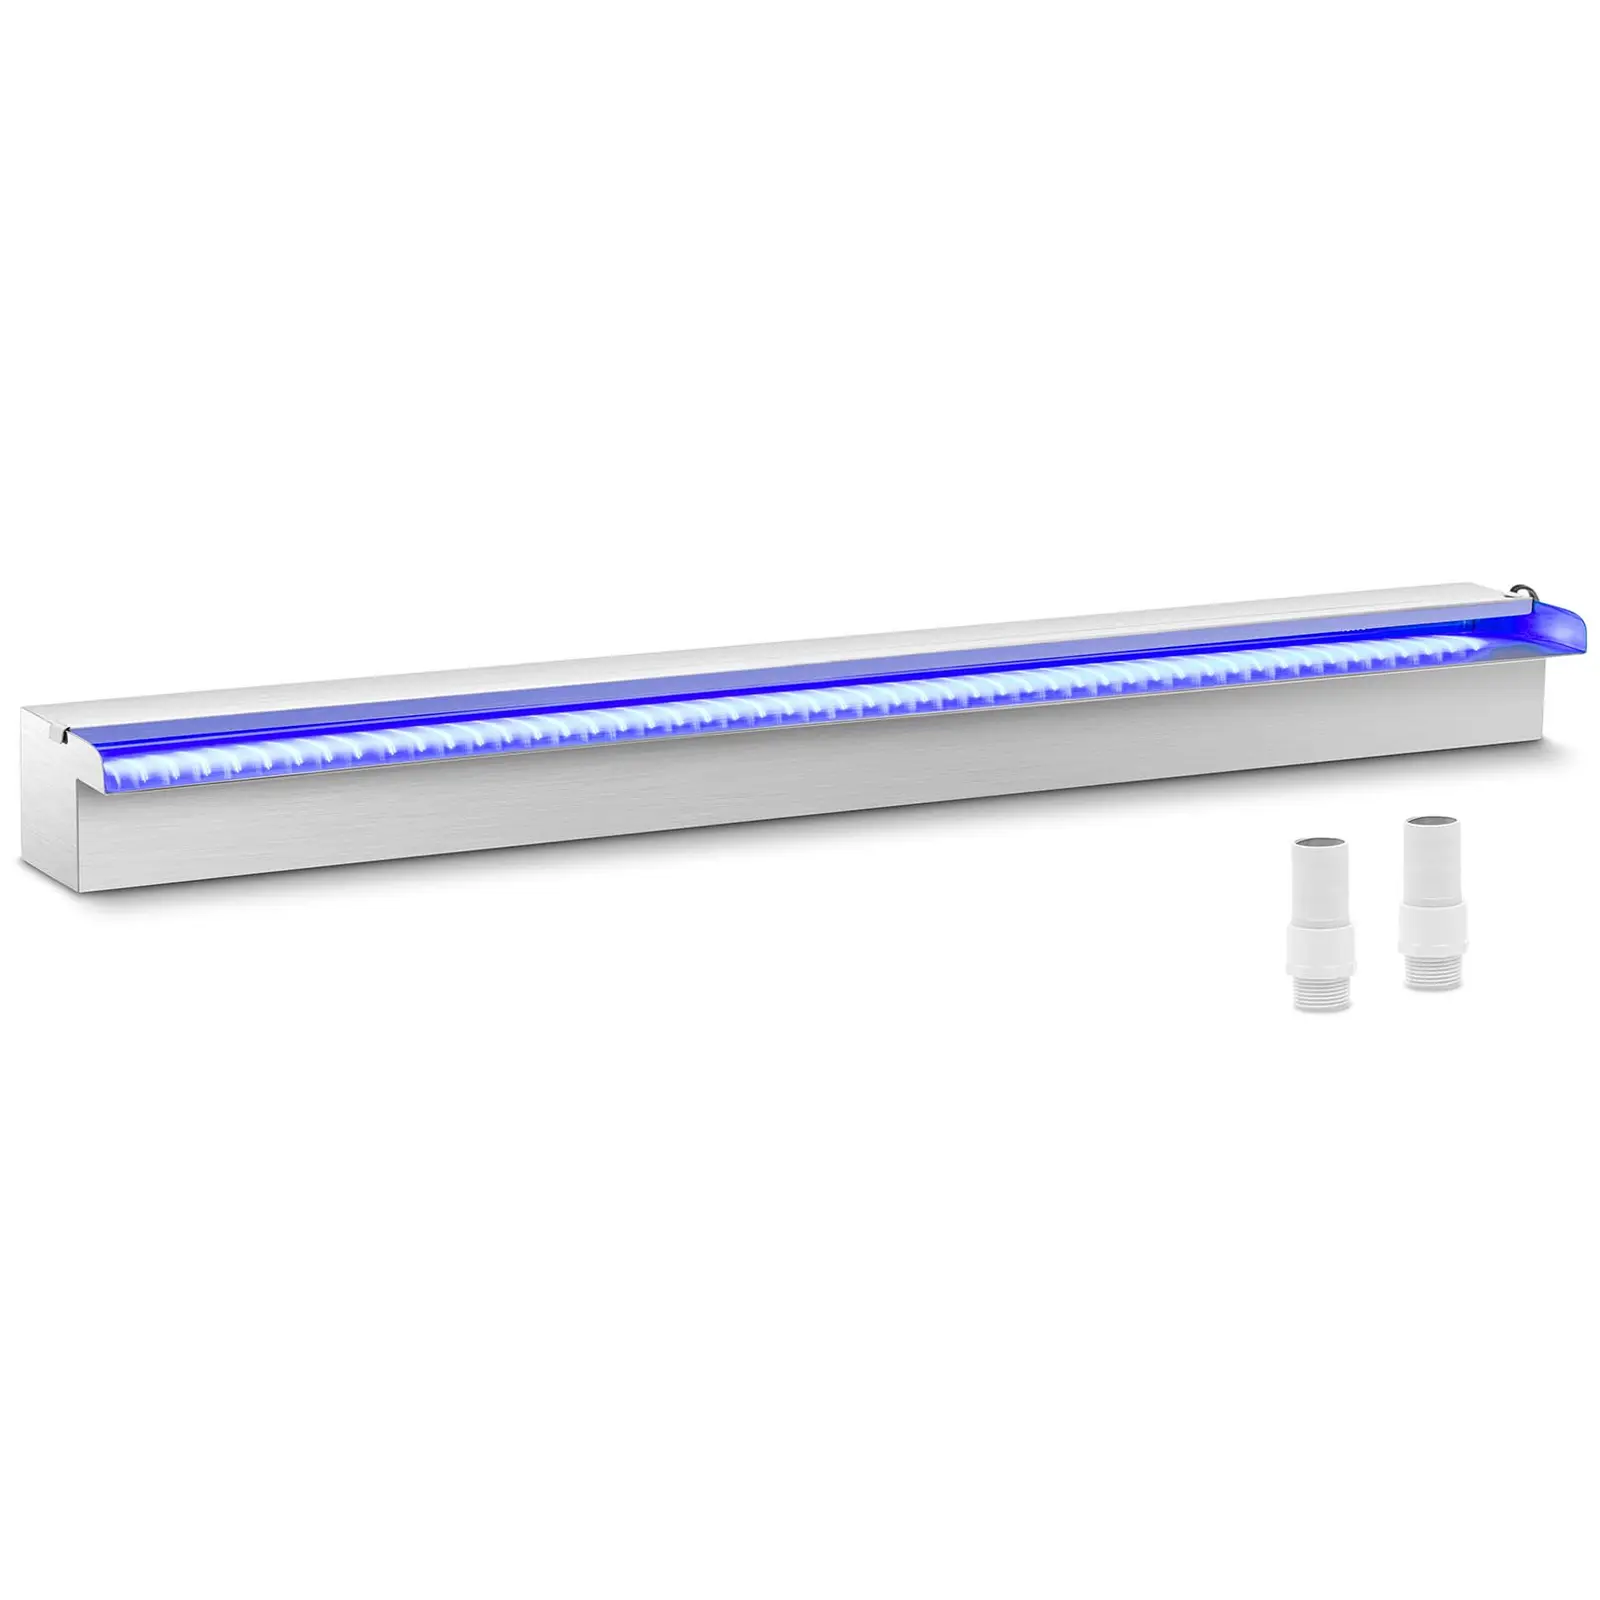 Naponski tuš - 90 cm - LED rasvjeta - Plavo/bijelo